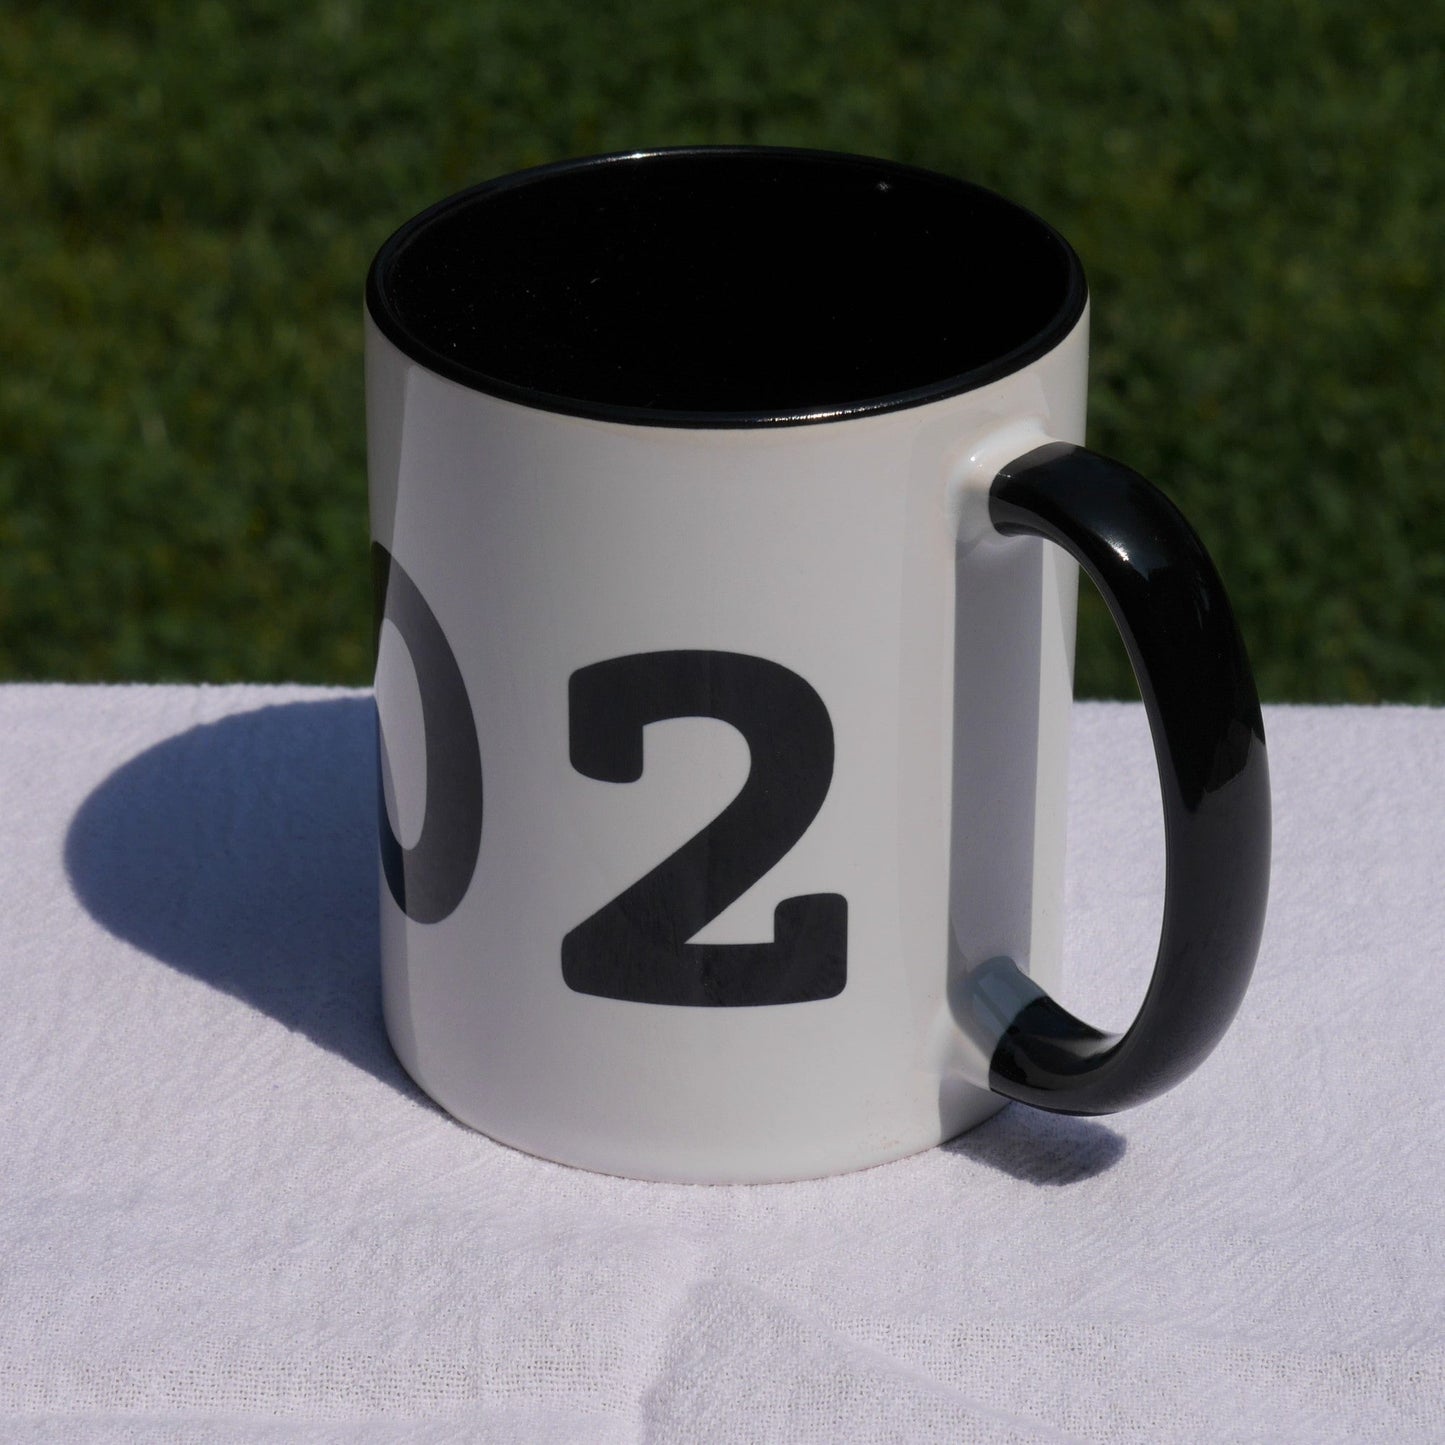 Aviation-Theme Coffee Mug - Black • YQM Moncton • YHM Designs - Image 06